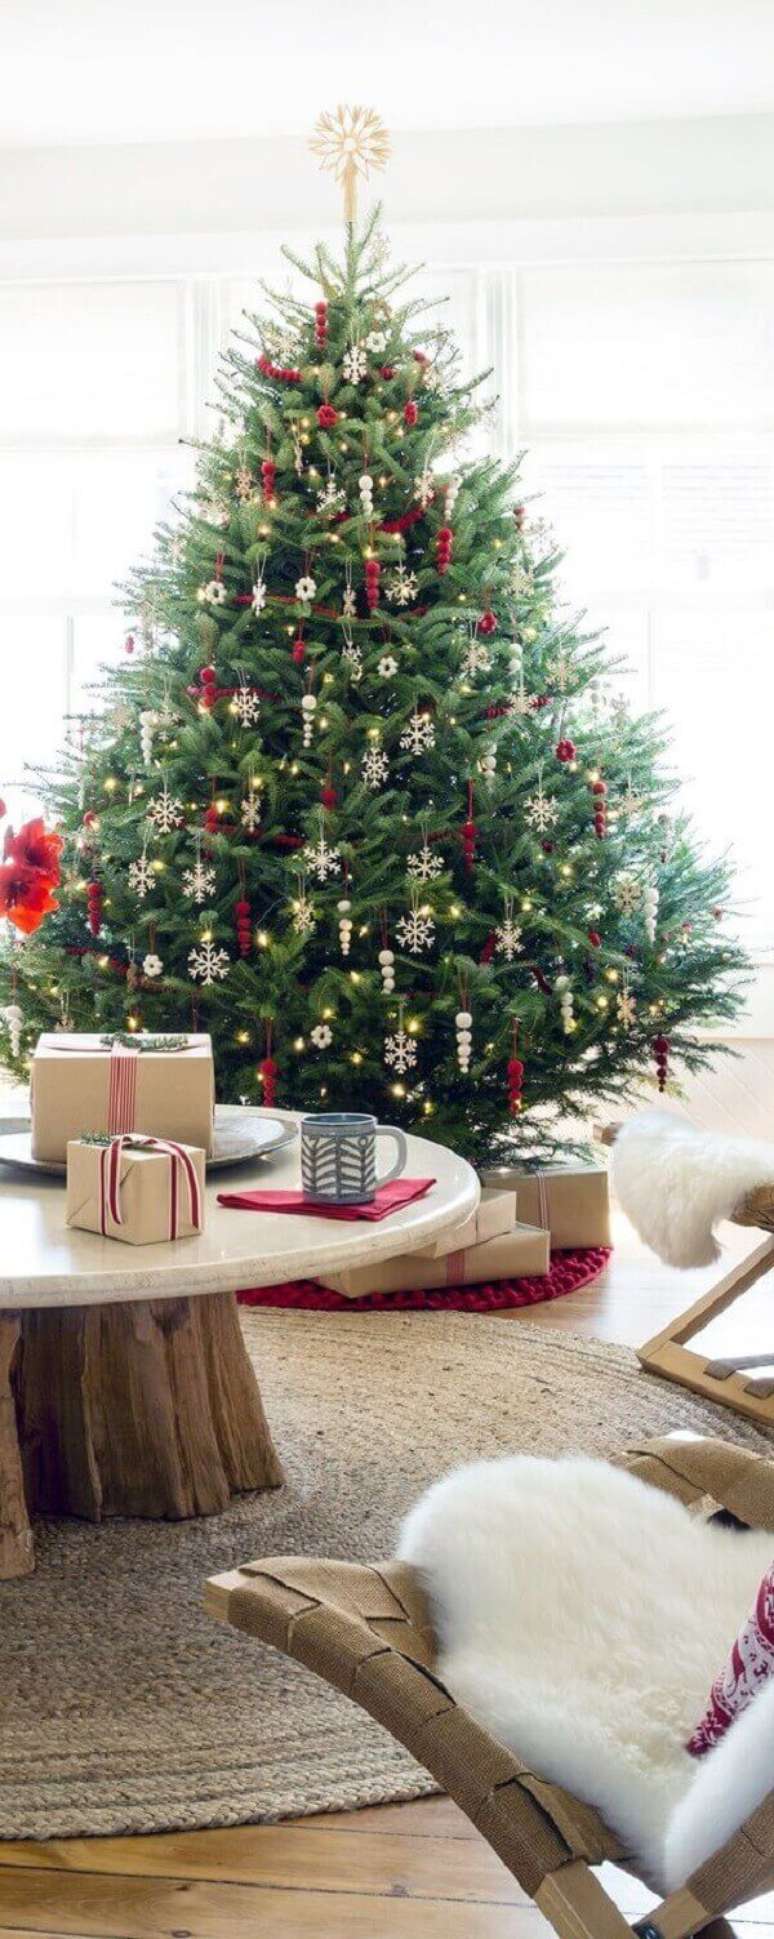 39- O pinheiro de natal é um tradicional enfeite das festas de fim de ano. Fonte: Buyer select